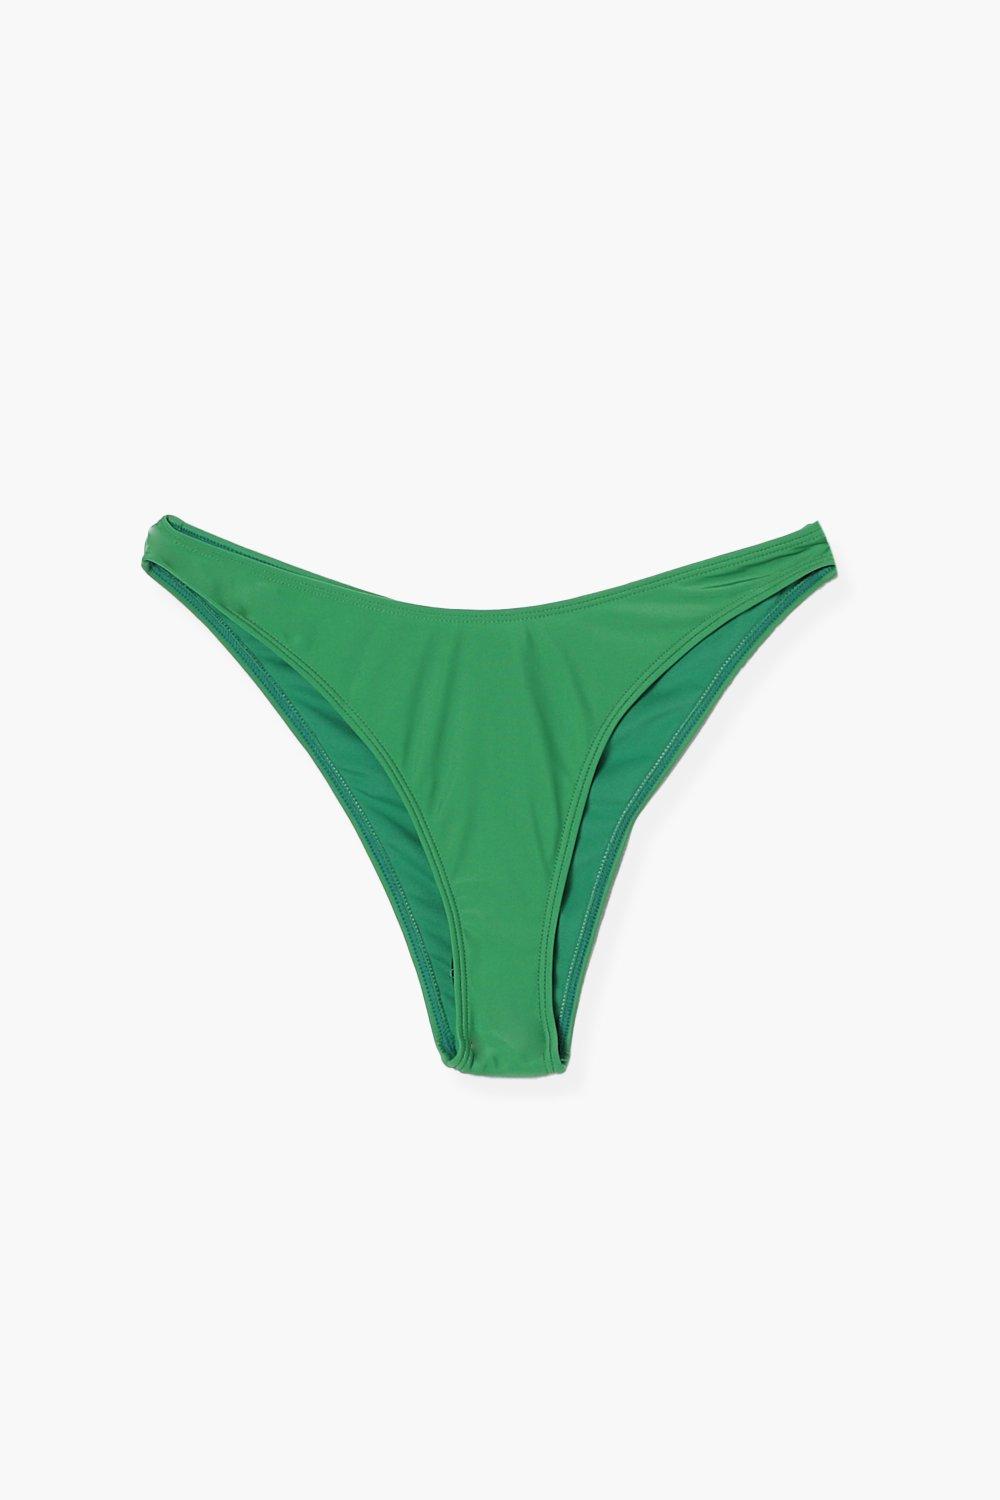 Essentials Women's Cotton Bikini Brief Underwear, Pack of 10, Green,  Botanical Floral, X-Small